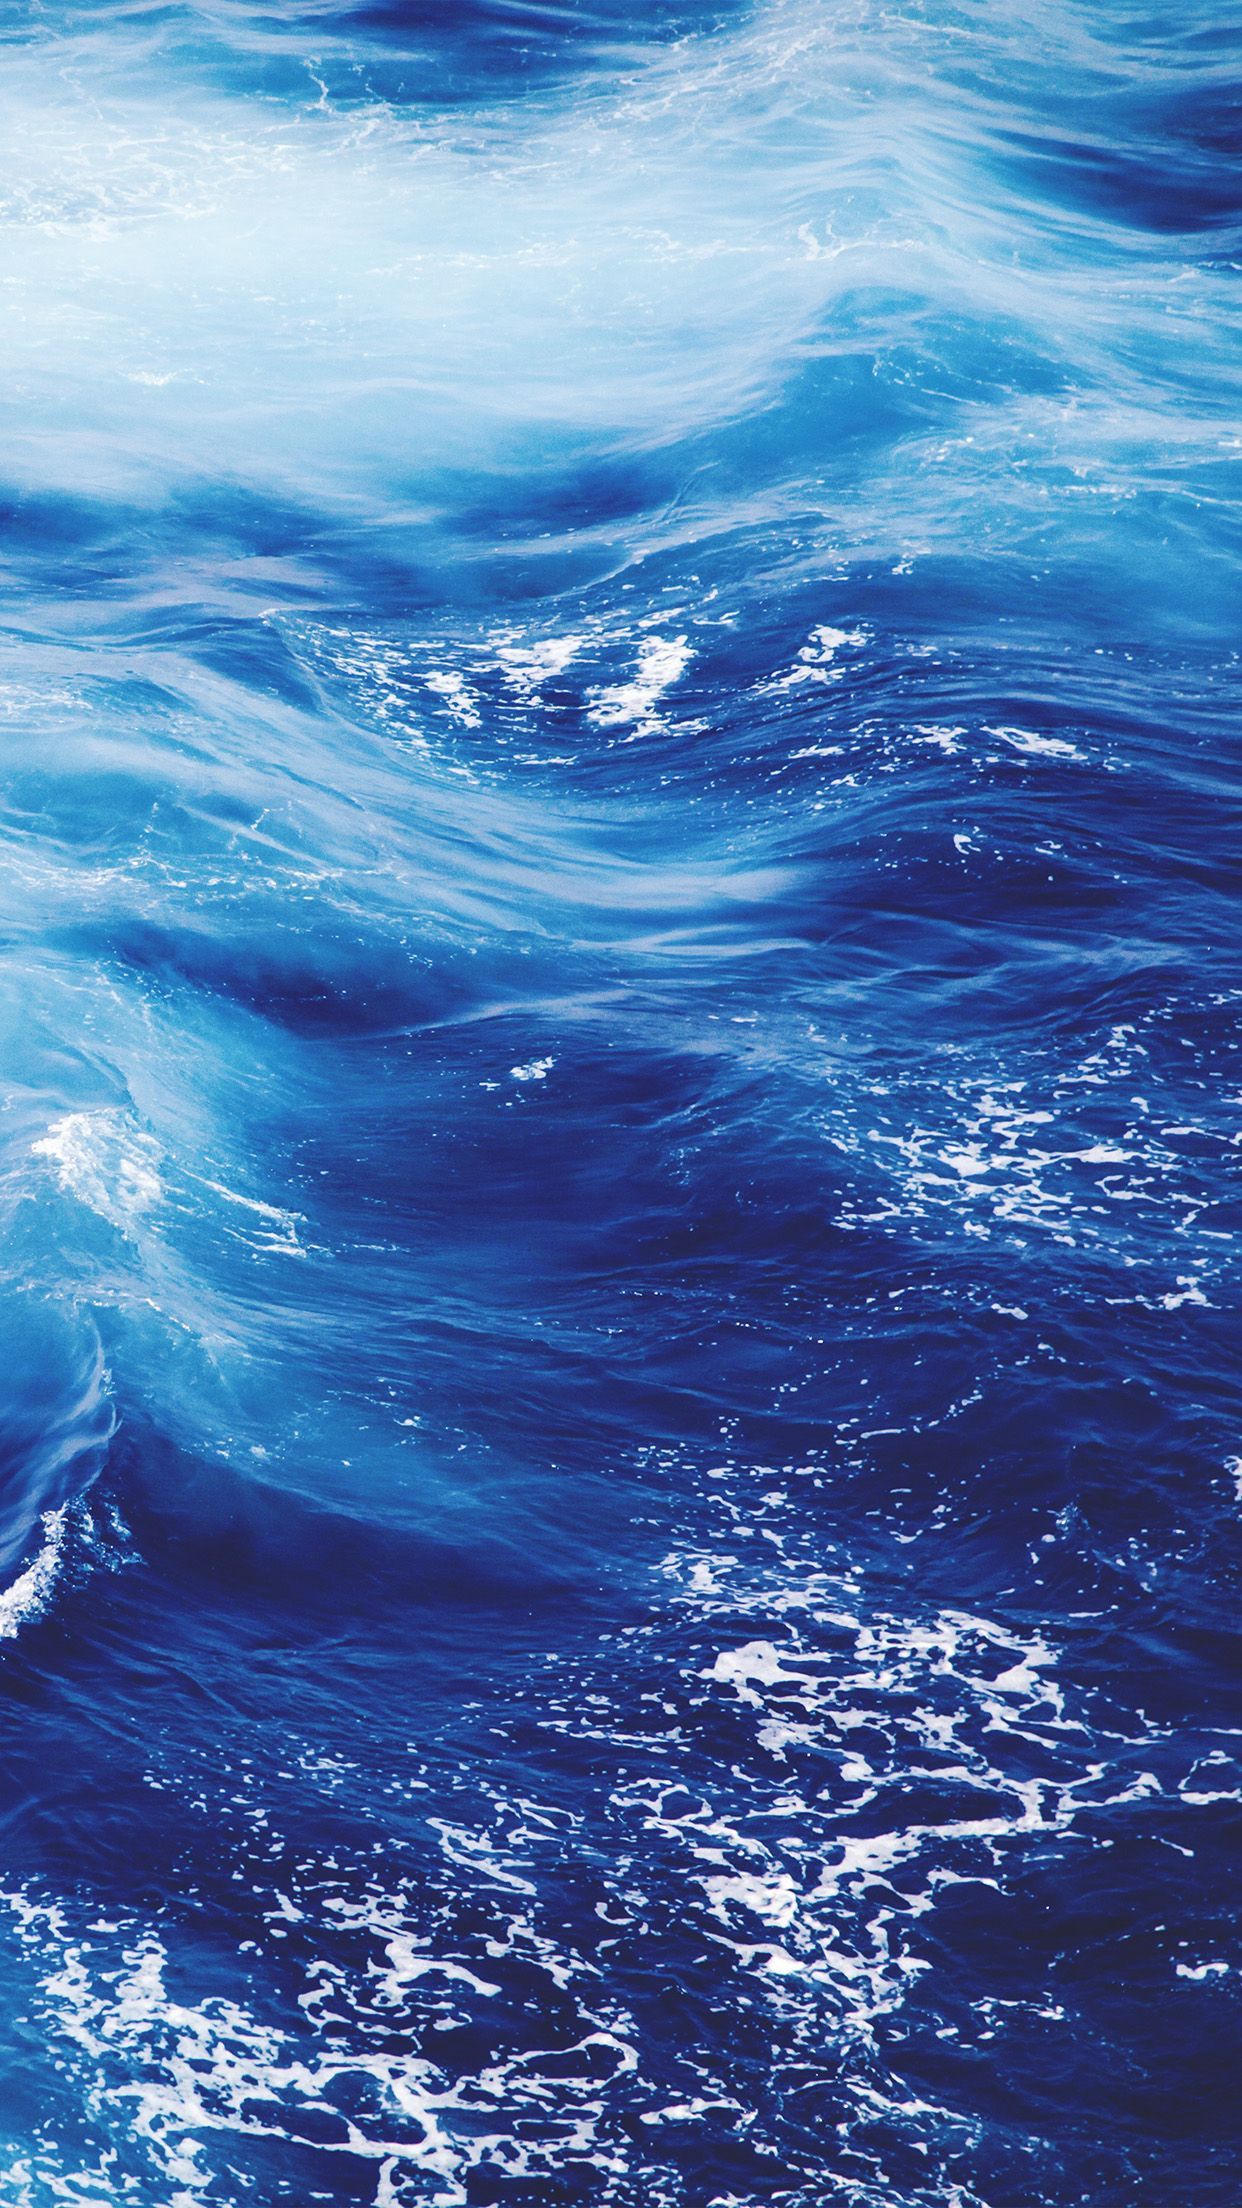 4k Ultra HD iPhone Xr Wallpaper. mywallpaper site. Nature water, Sea and ocean, Ocean